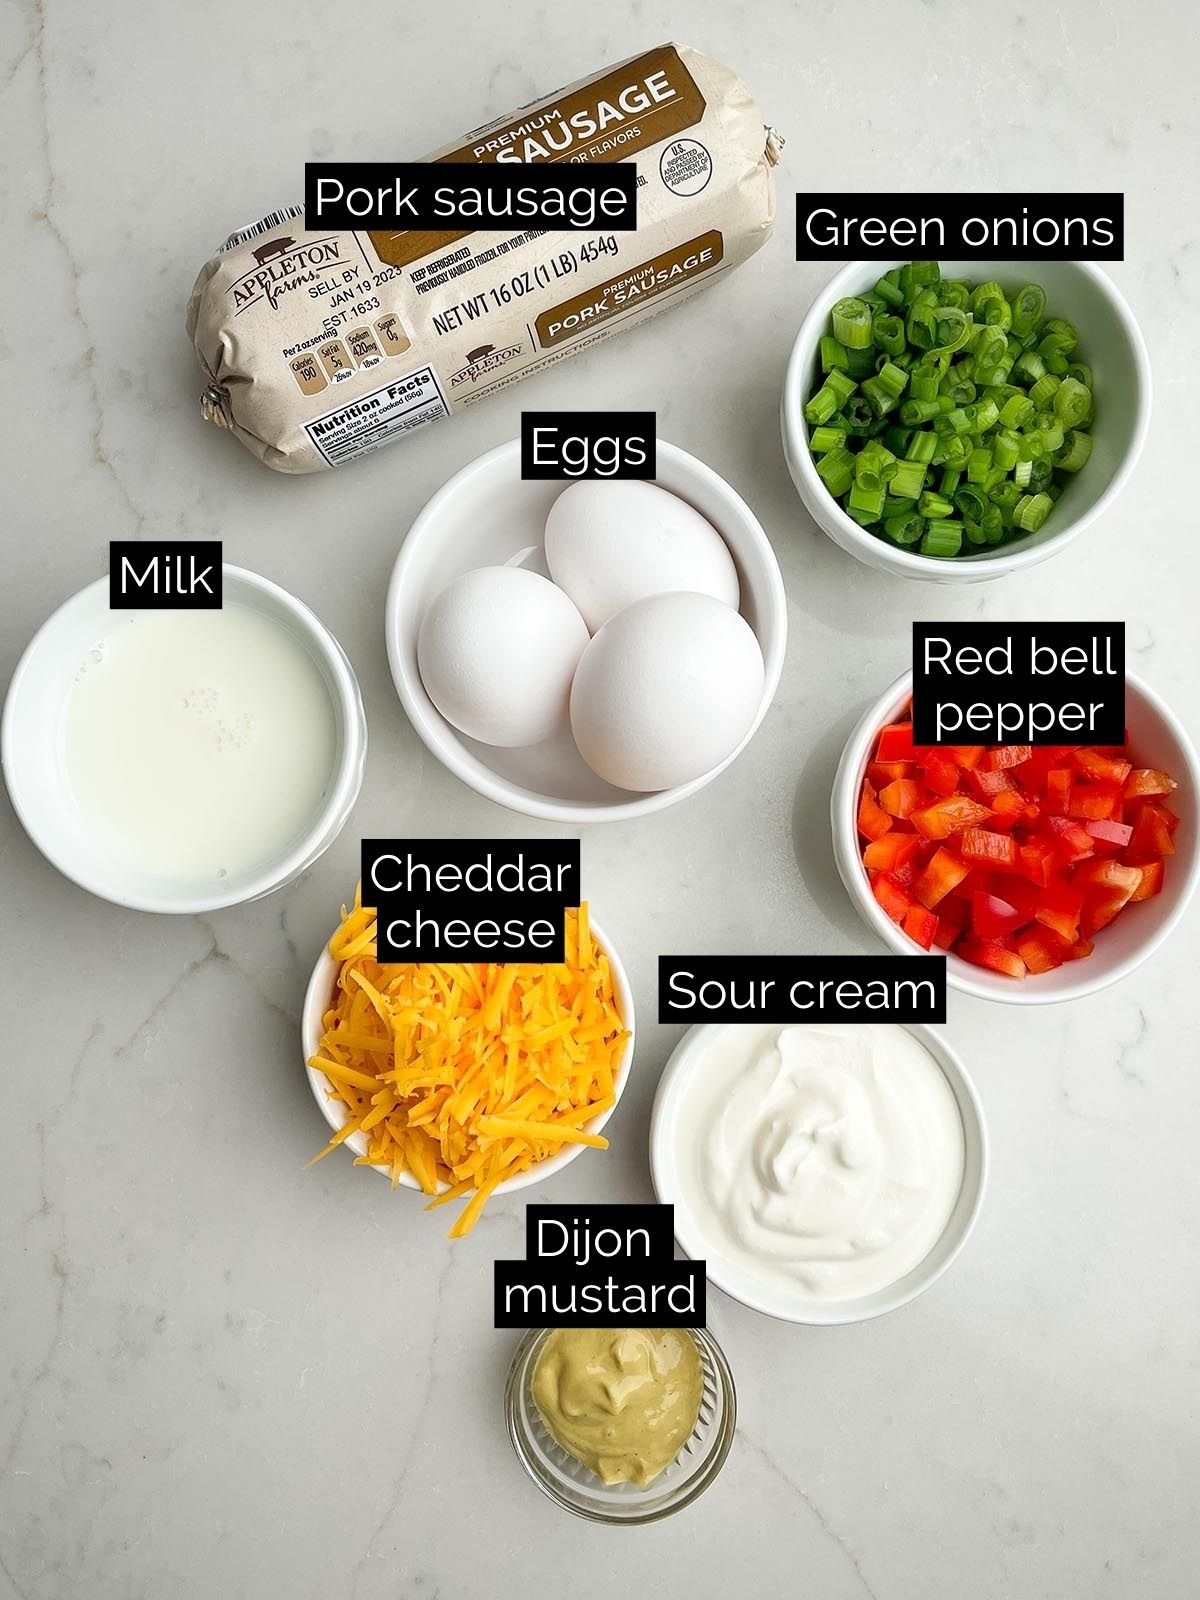 sausage egg bake ingredients.